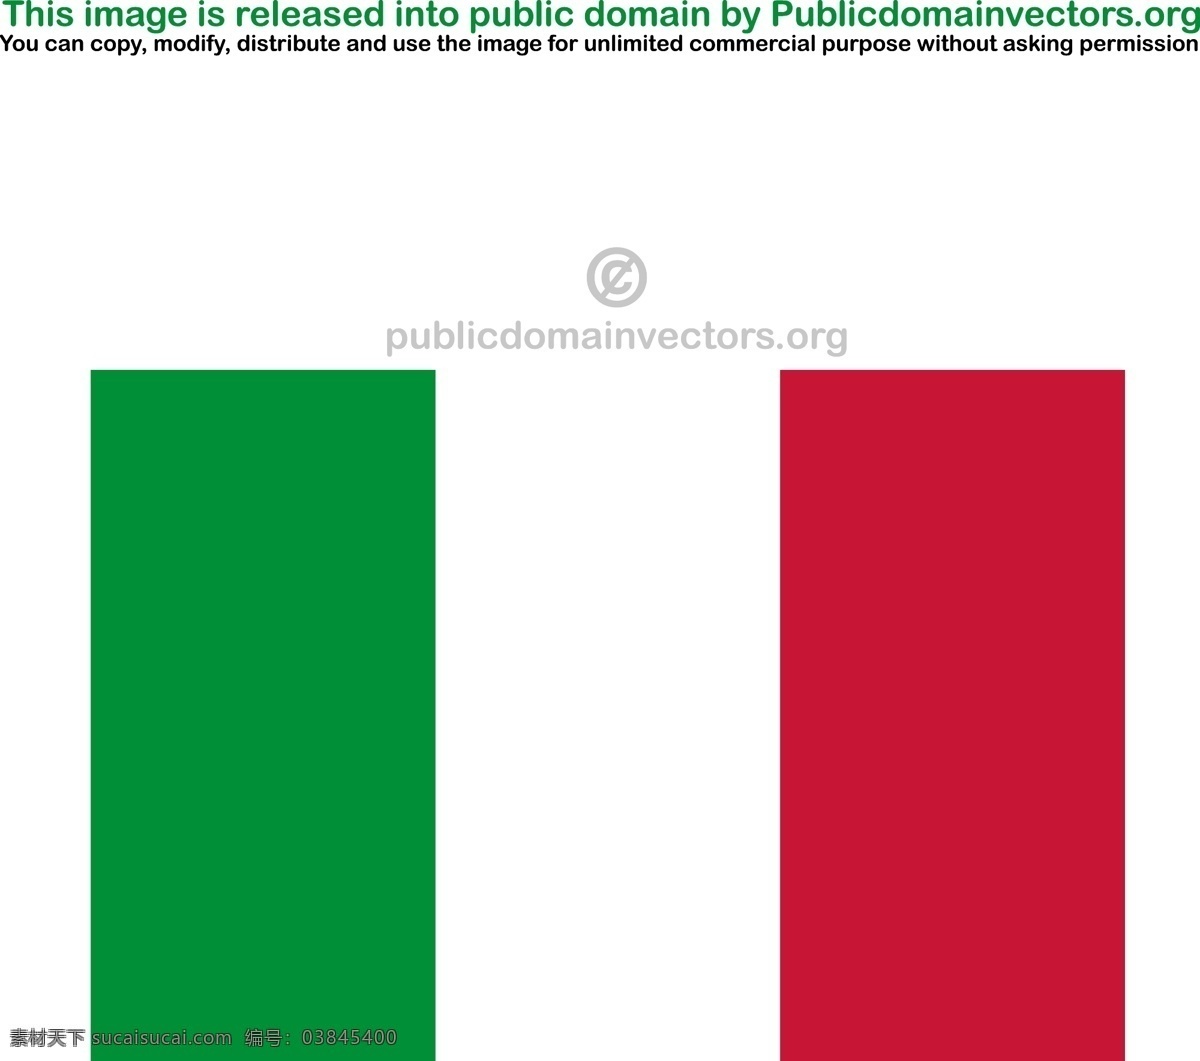 意大利 矢量 标志 国家 旗帜 土地 州 共和国 欧盟 欧洲联盟 svg 矢量图 文化艺术